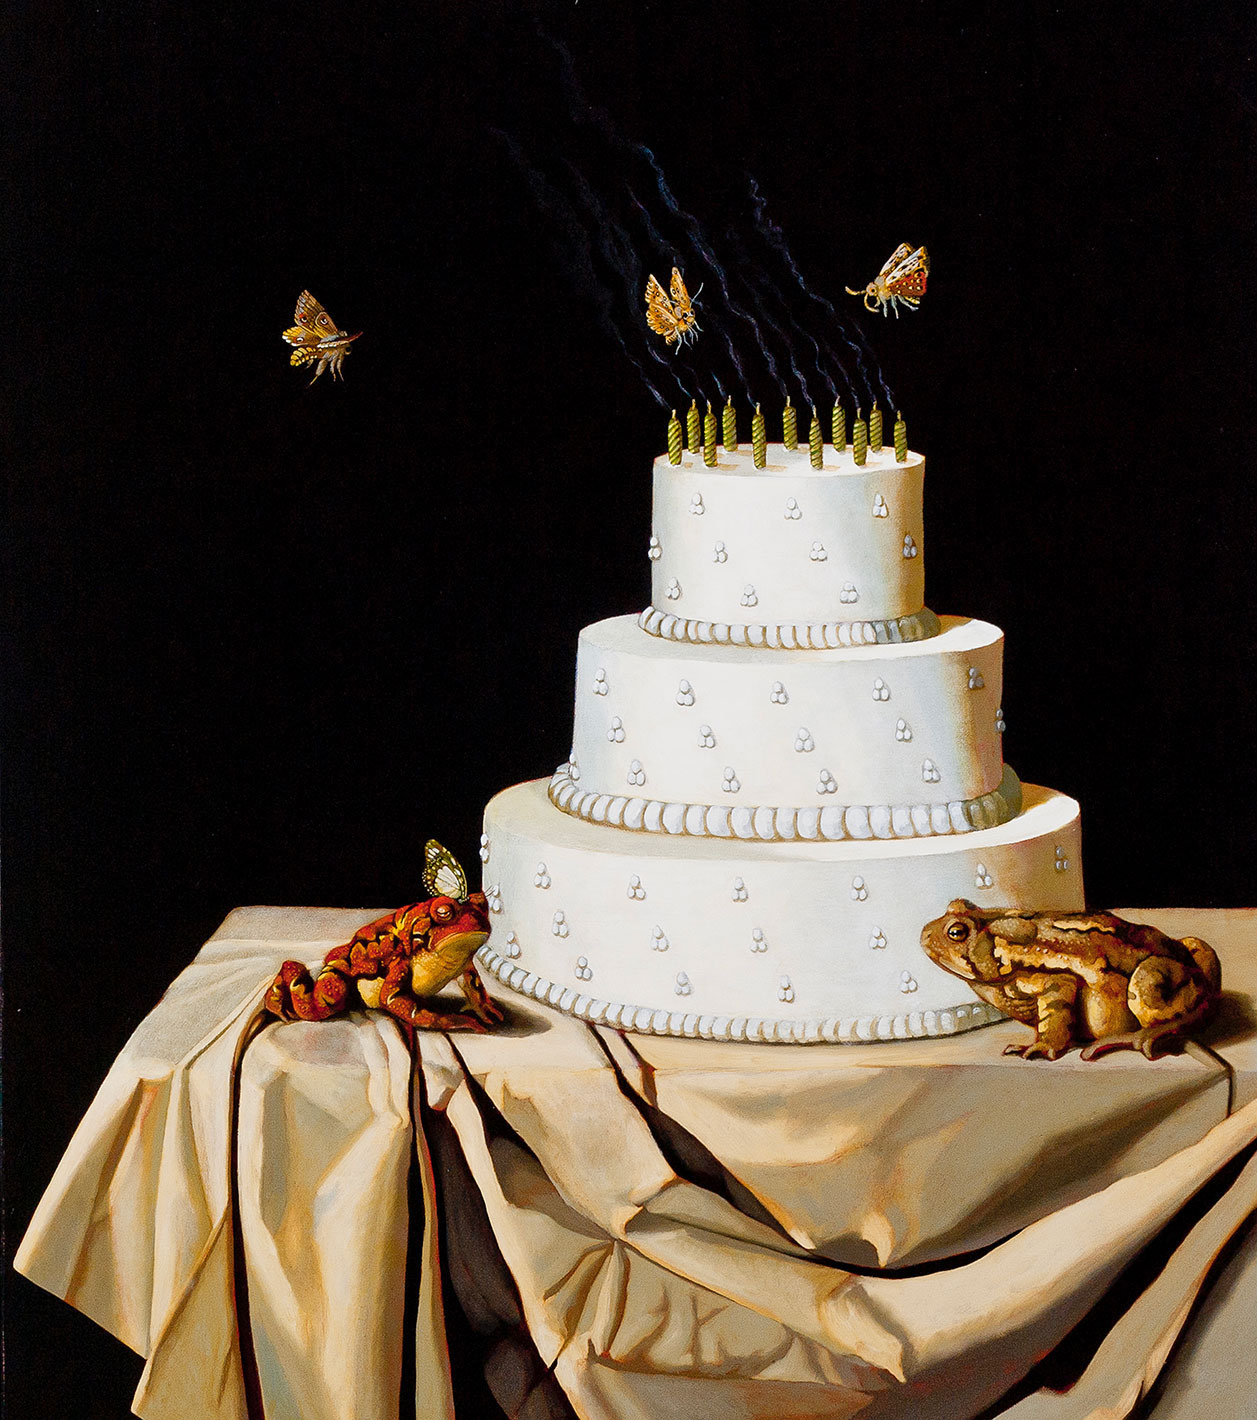 Lloyd Walsh (American, born 1963), Untitled (Wedding Cake)